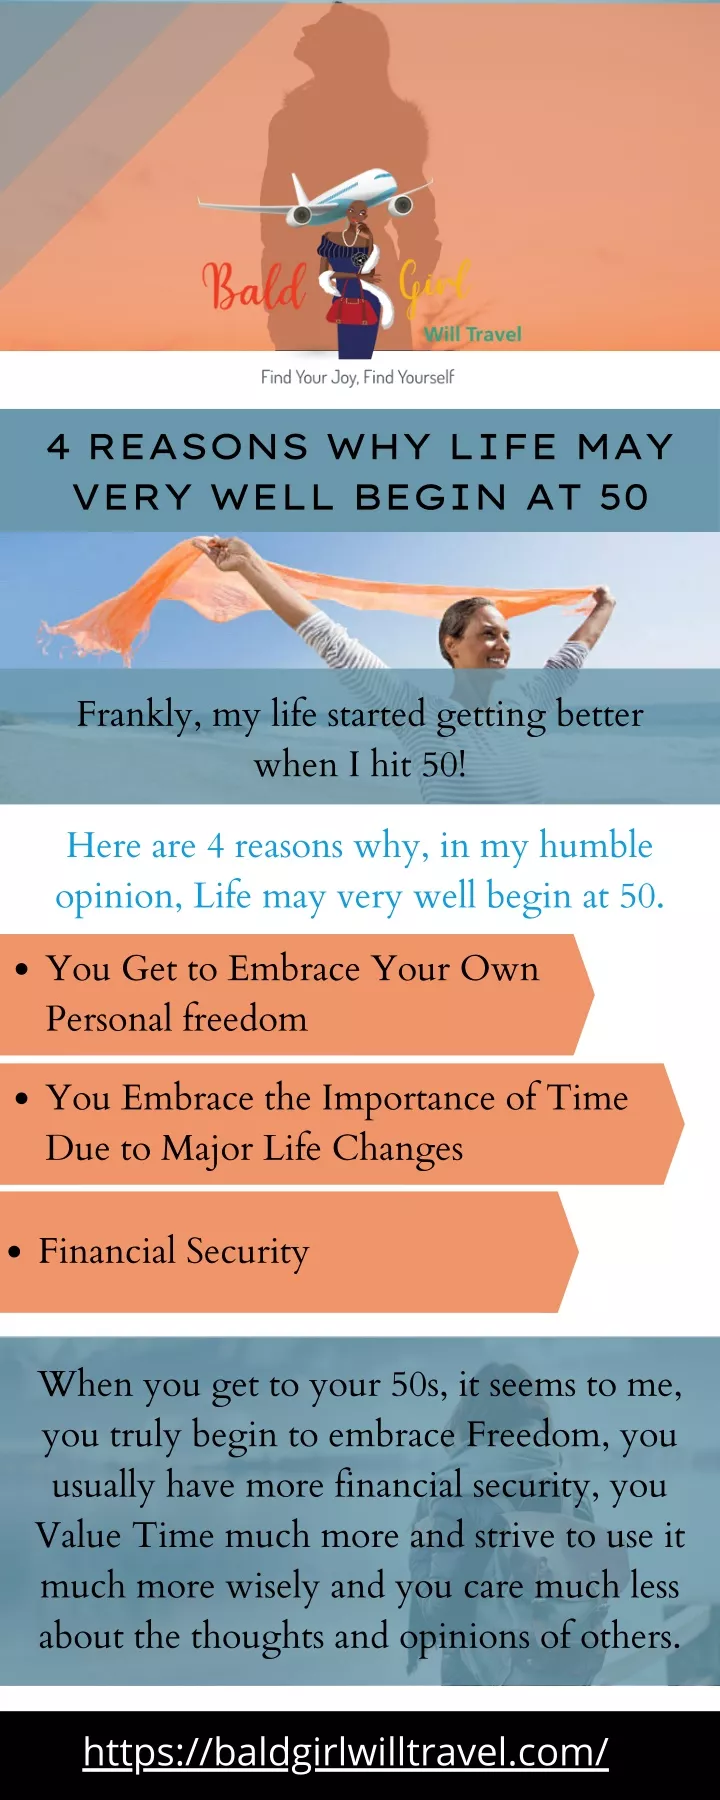 4 reasons why life may very well begin at 50